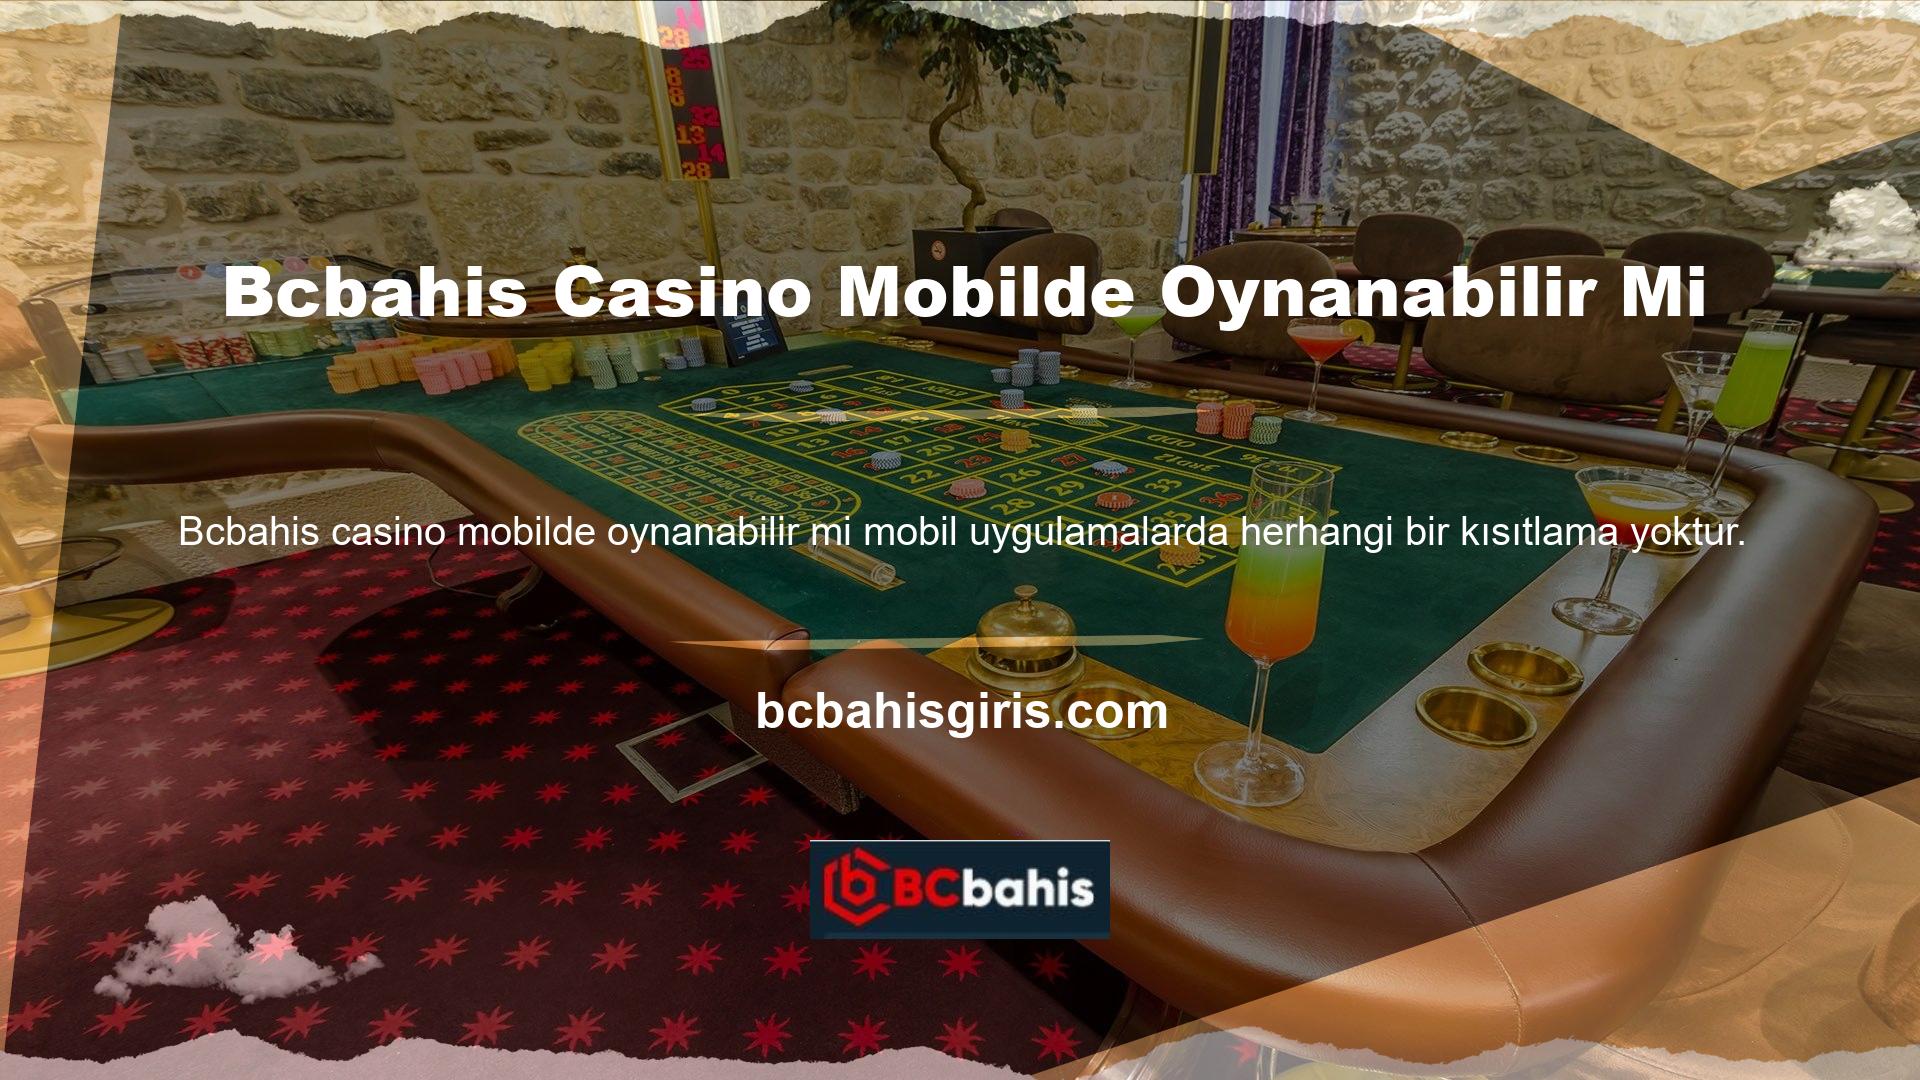 Bcbahis Casino mobilde oynanabilir mi? Tabii ki, hareket halindeyken de tüm oyun kategorilerini kullanabilirsiniz